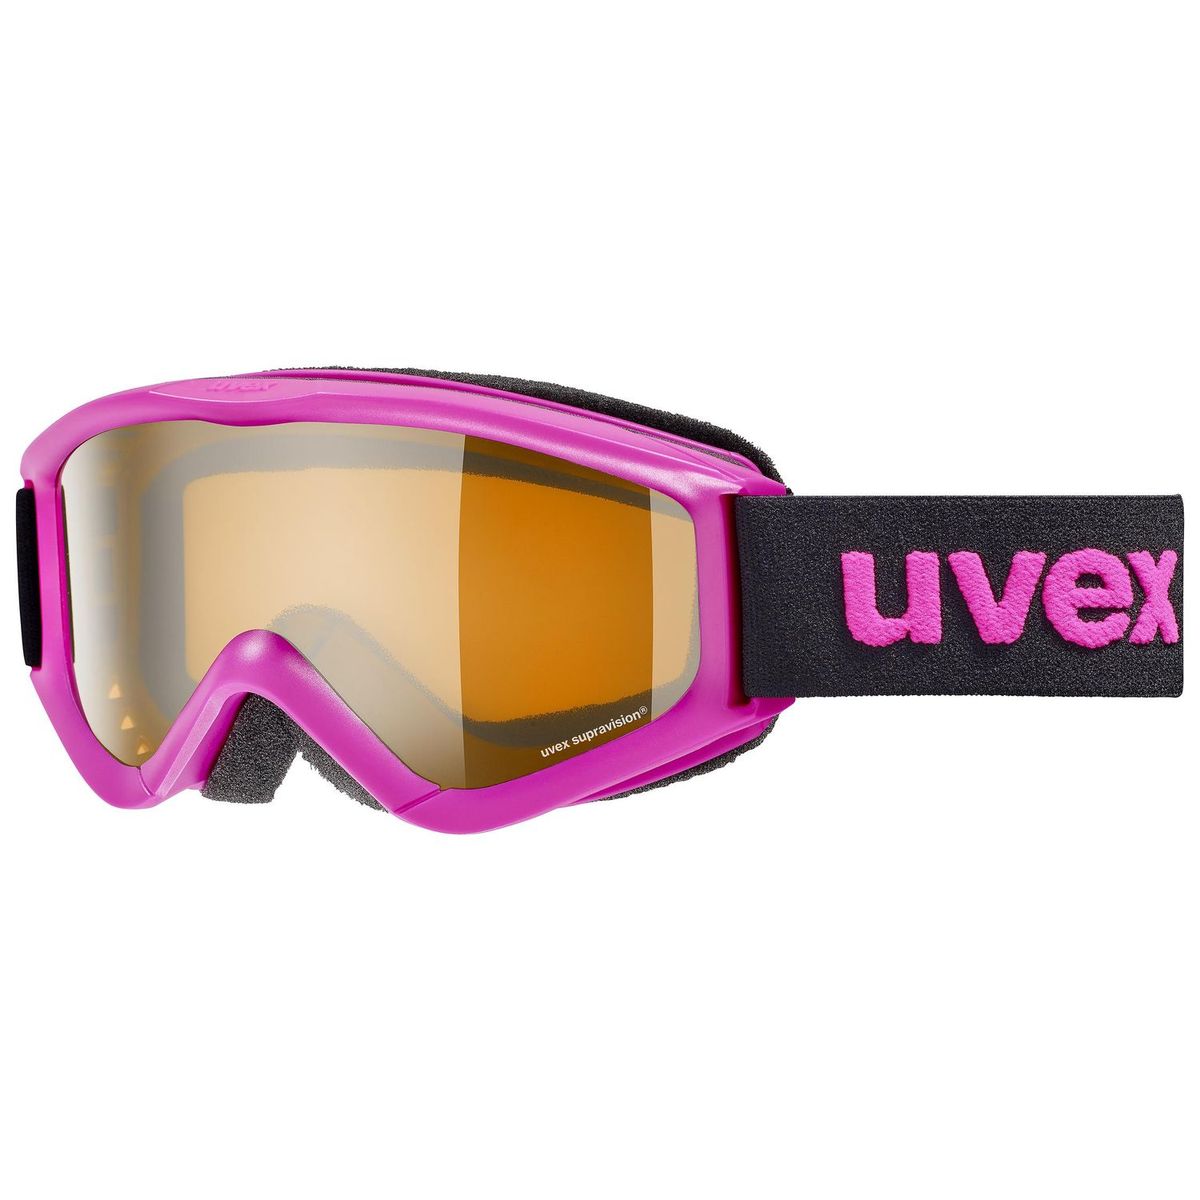 Uvex Speedy Pro Skibrille